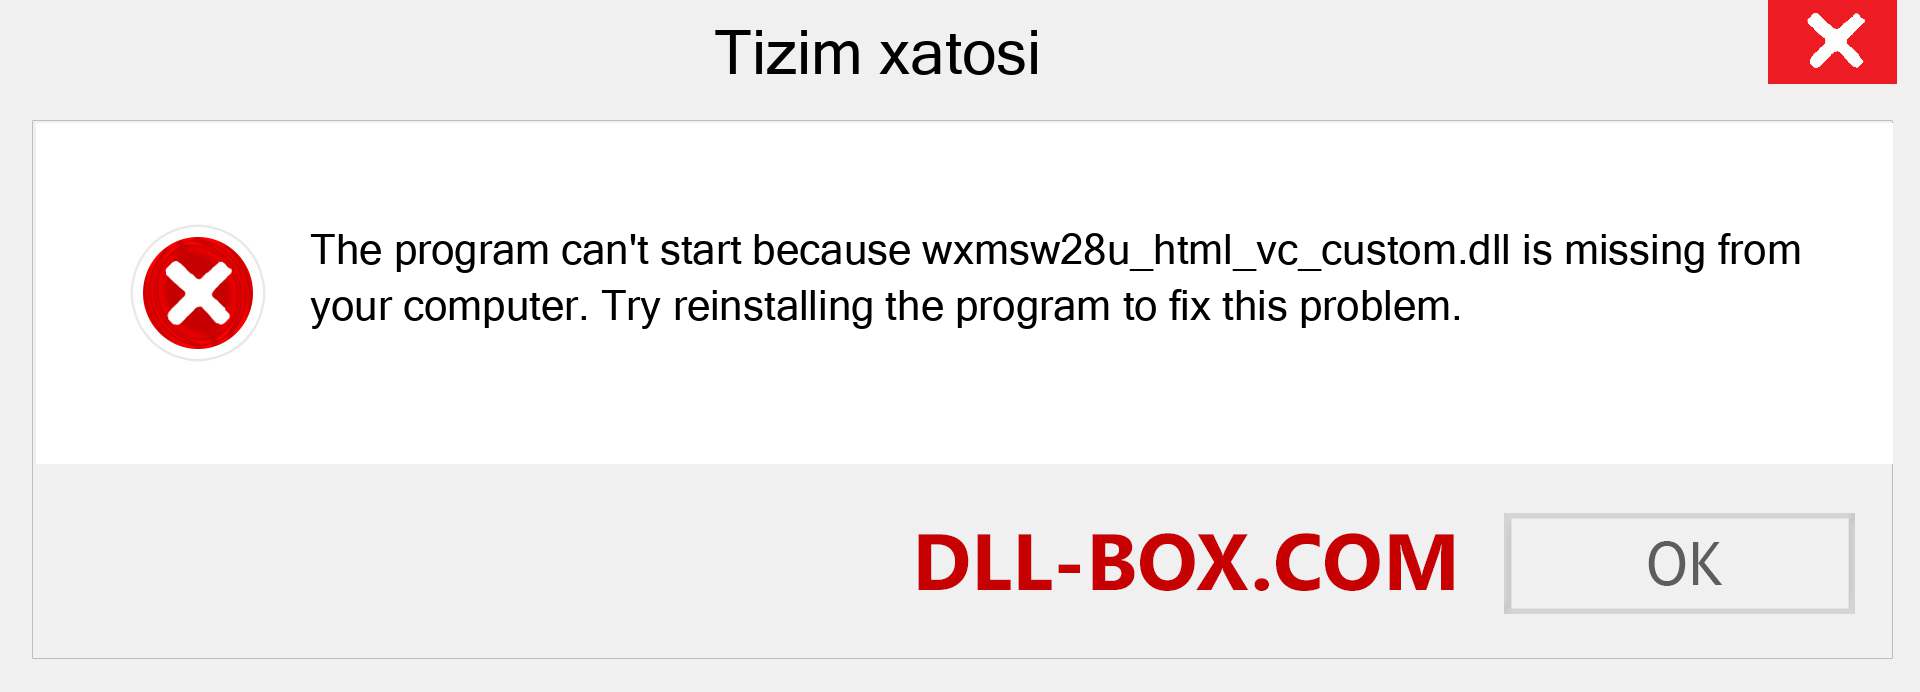 wxmsw28u_html_vc_custom.dll fayli yo'qolganmi?. Windows 7, 8, 10 uchun yuklab olish - Windowsda wxmsw28u_html_vc_custom dll etishmayotgan xatoni tuzating, rasmlar, rasmlar